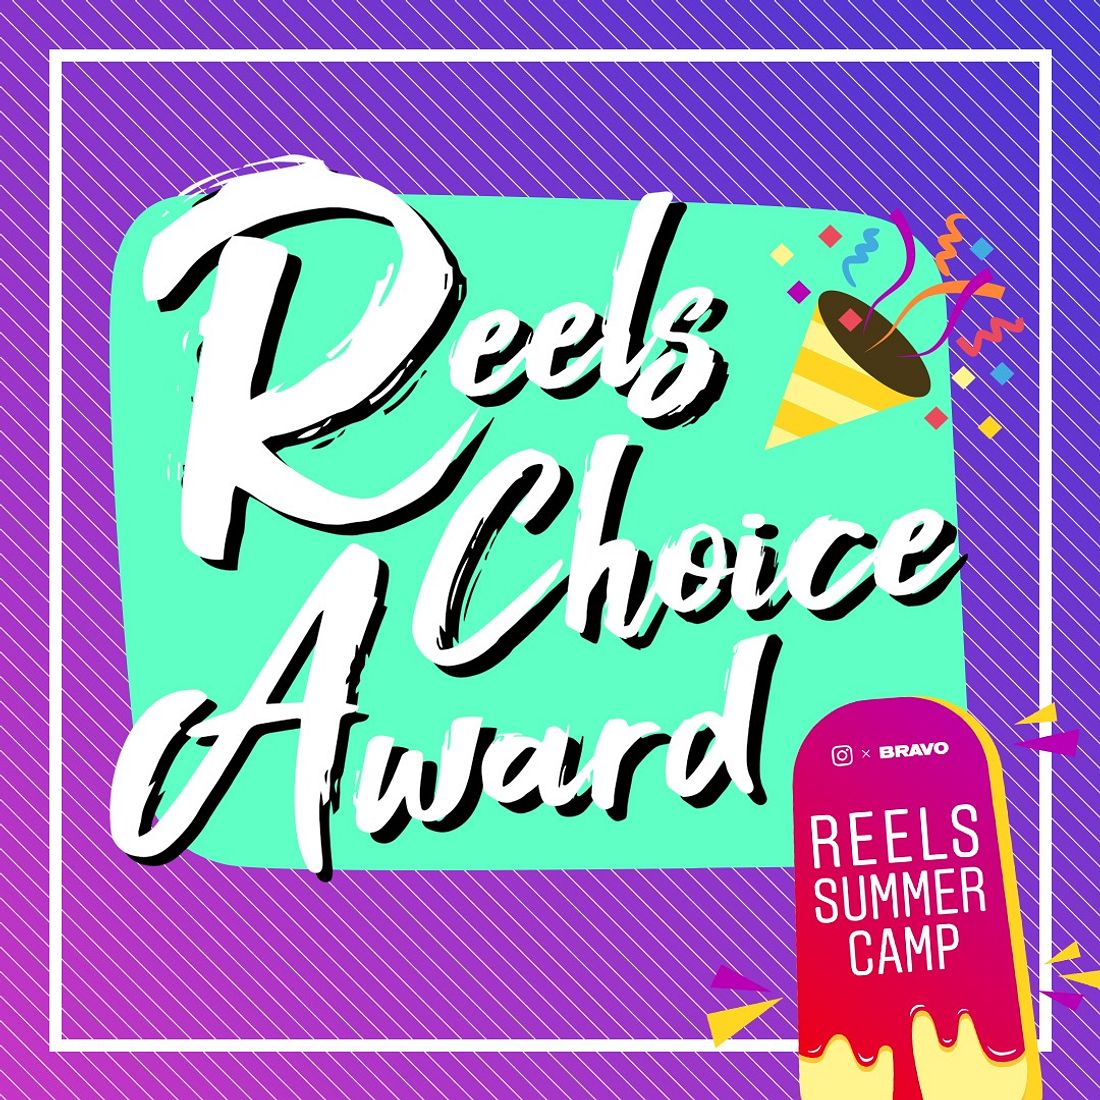 Reels Choice Award: Das sind die Finalisten